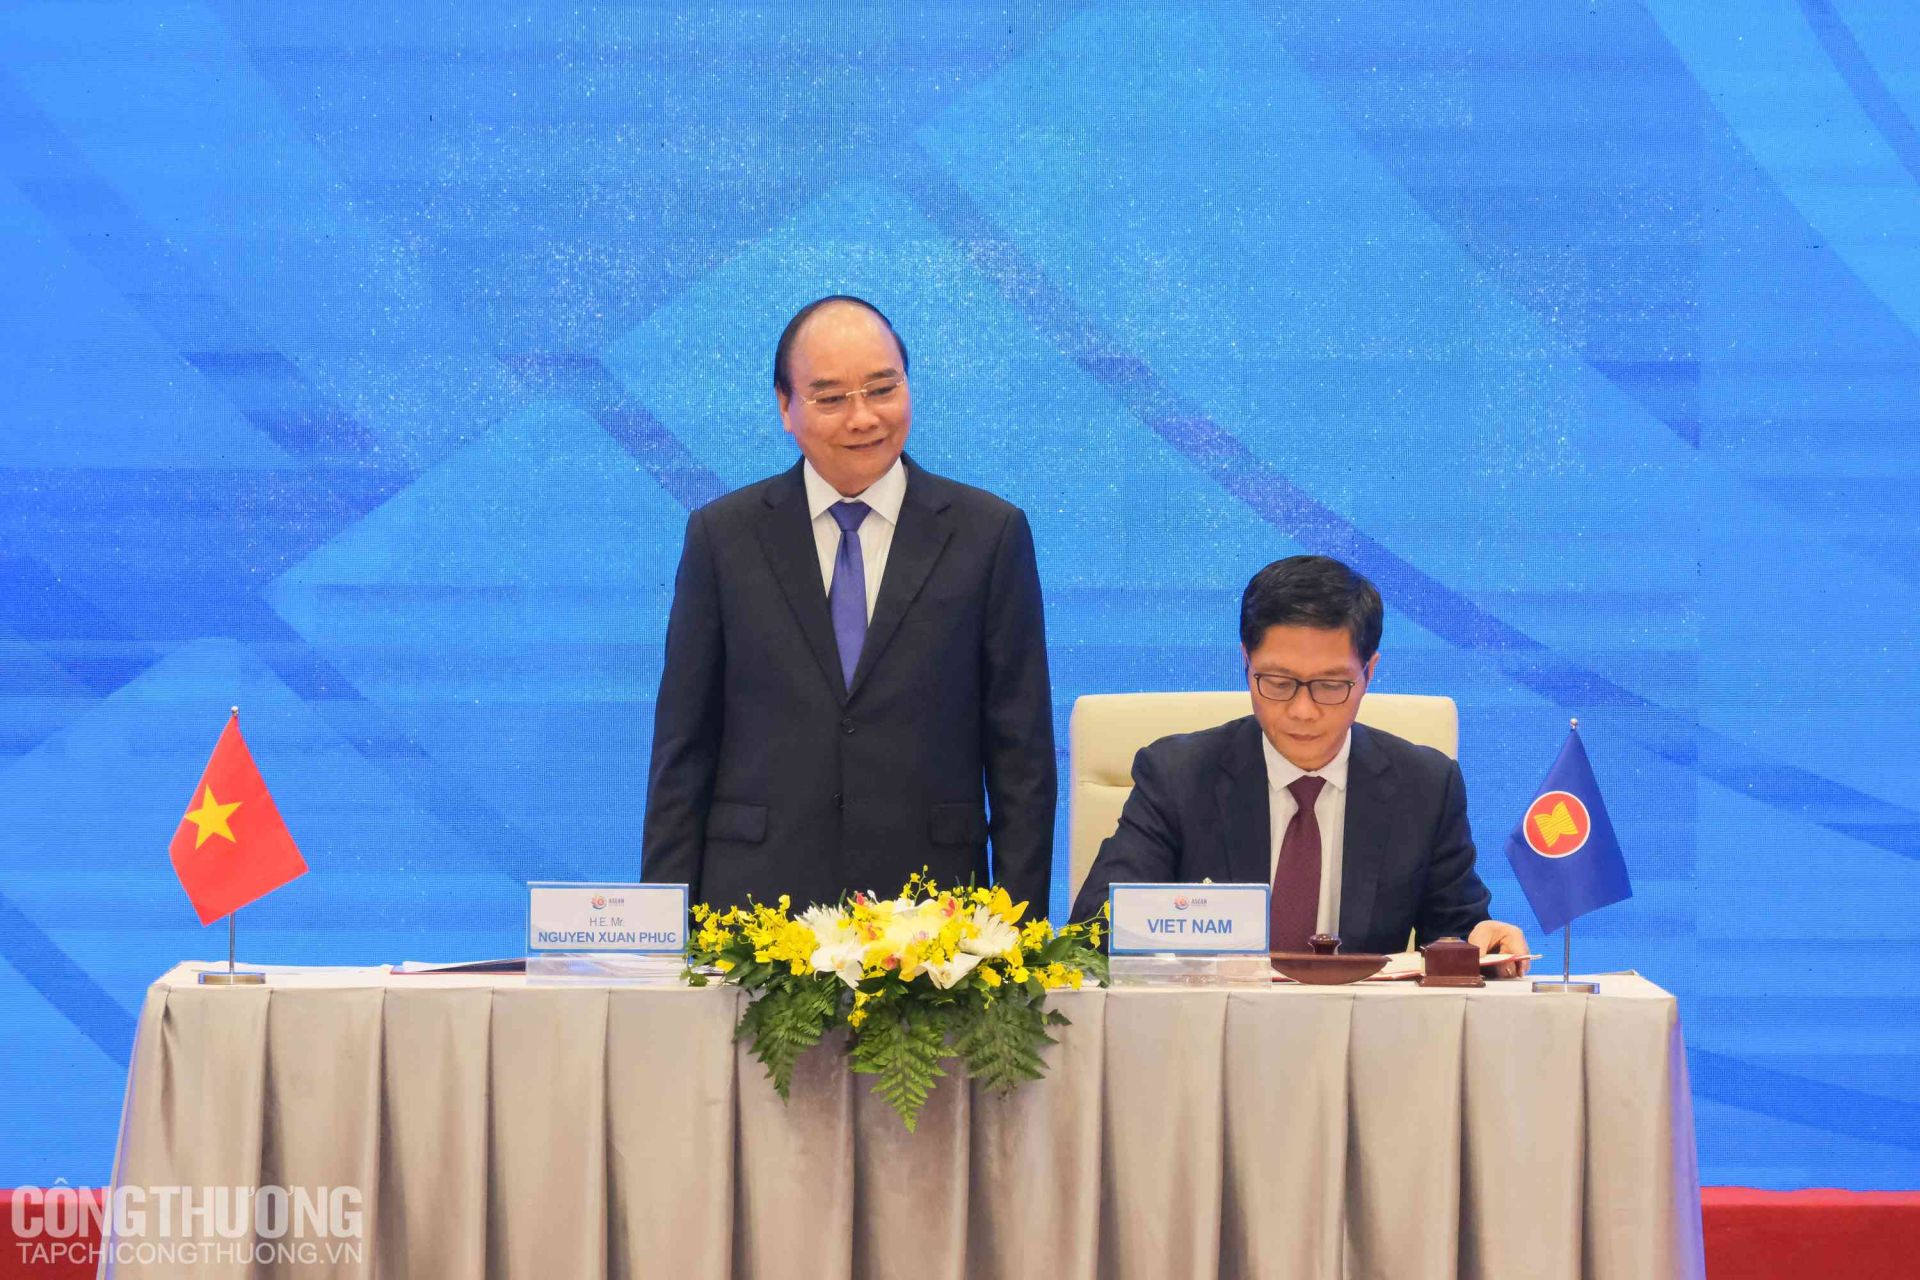 Bộ trưởng Trần Tuấn Anh đại diện Việt Nam ký kết Hiệp định dưới sự chứng kiến của Thủ tướng Nguyễn Xuân Phúc